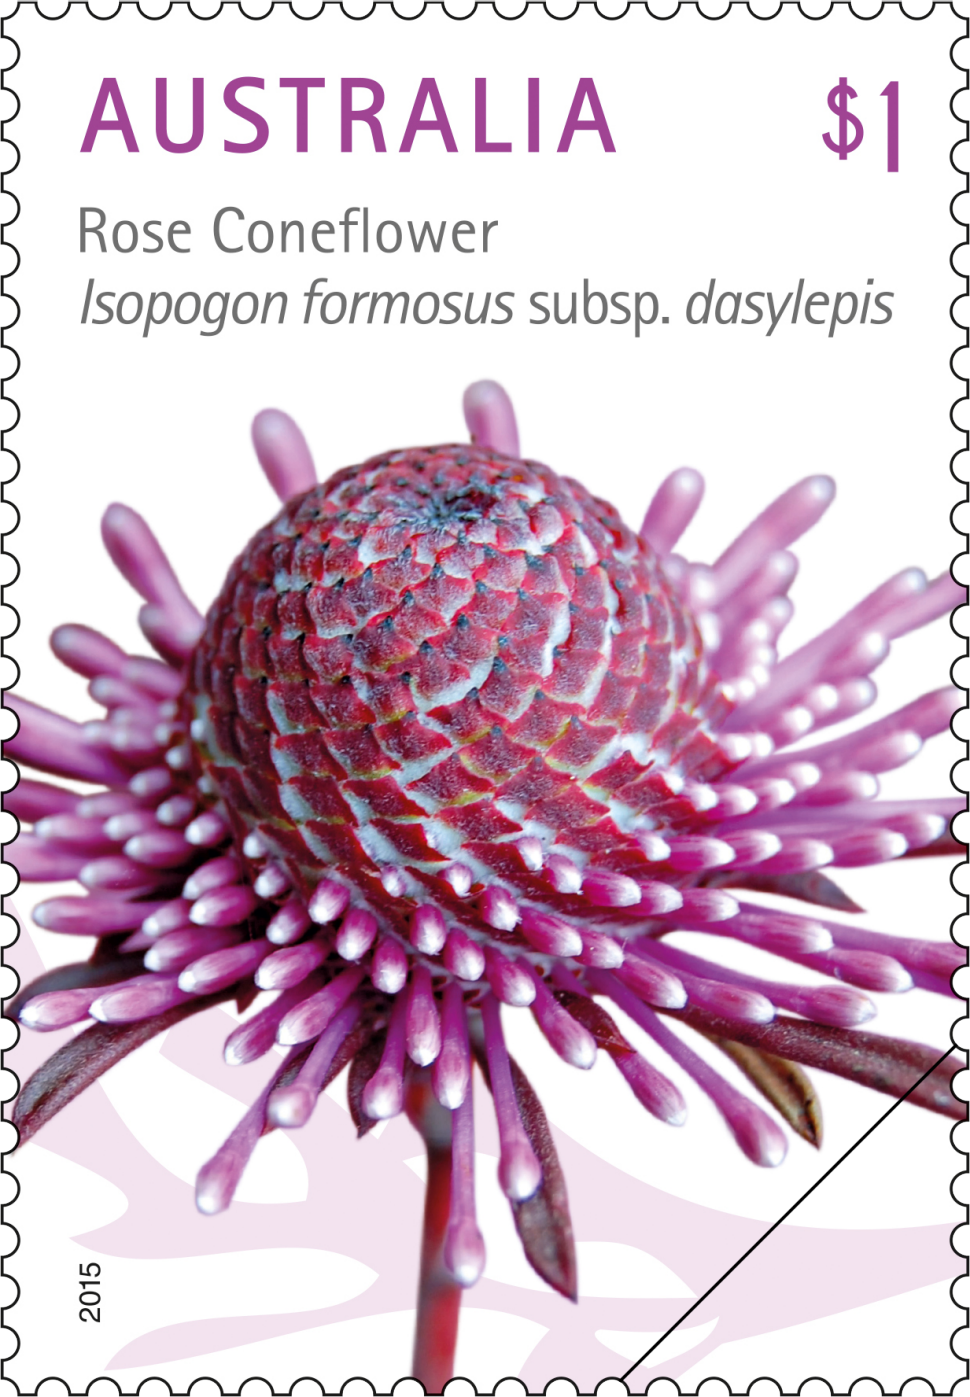 $1 - Rose Coneflower, Isopogon formosus subsp. dasylepis